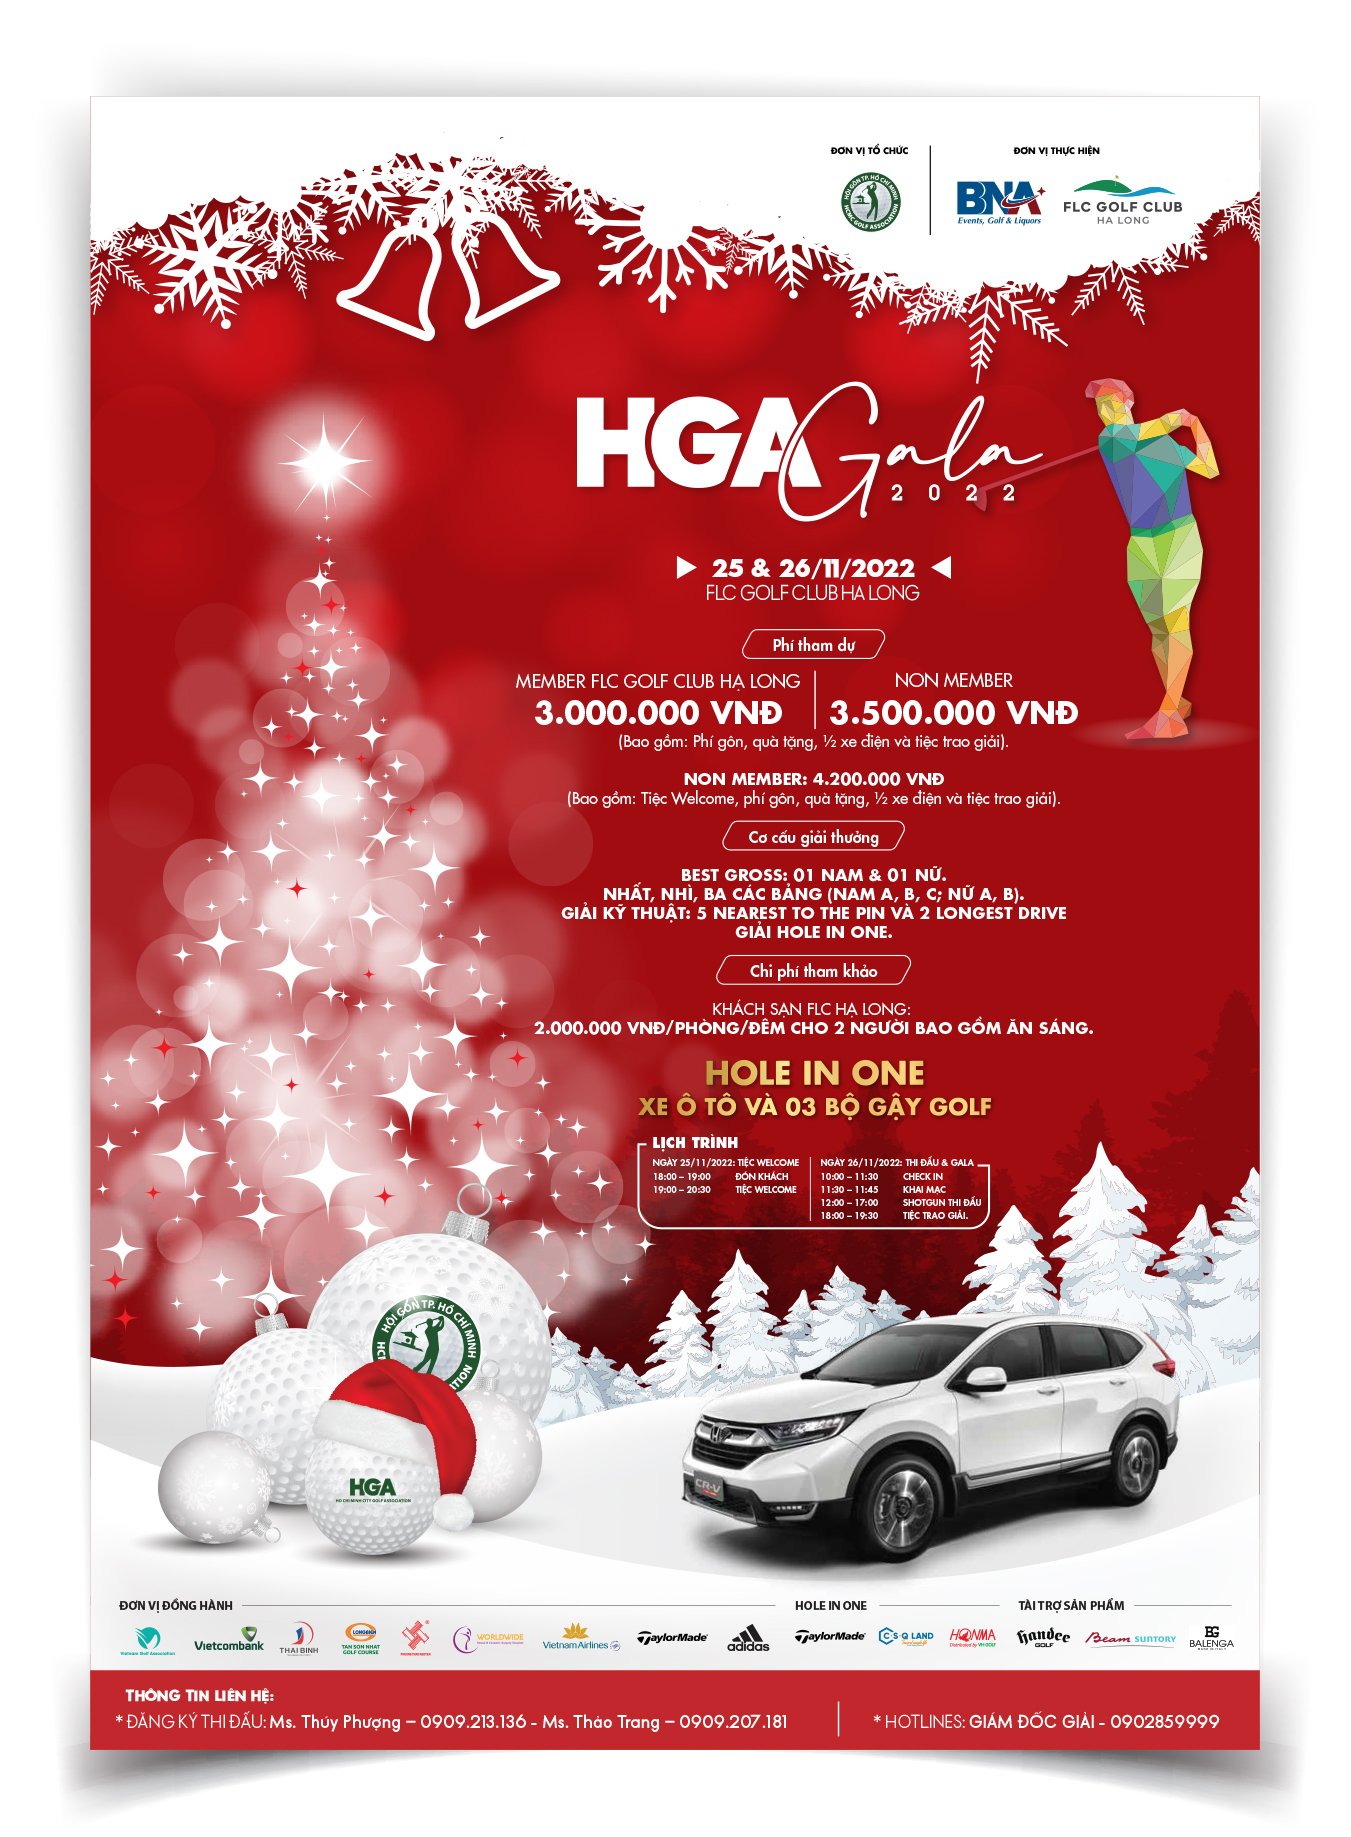 Hội golf TP. Hồ Chí Minh đăng cai tổ chức thành công giải golf HGA Gala 2022